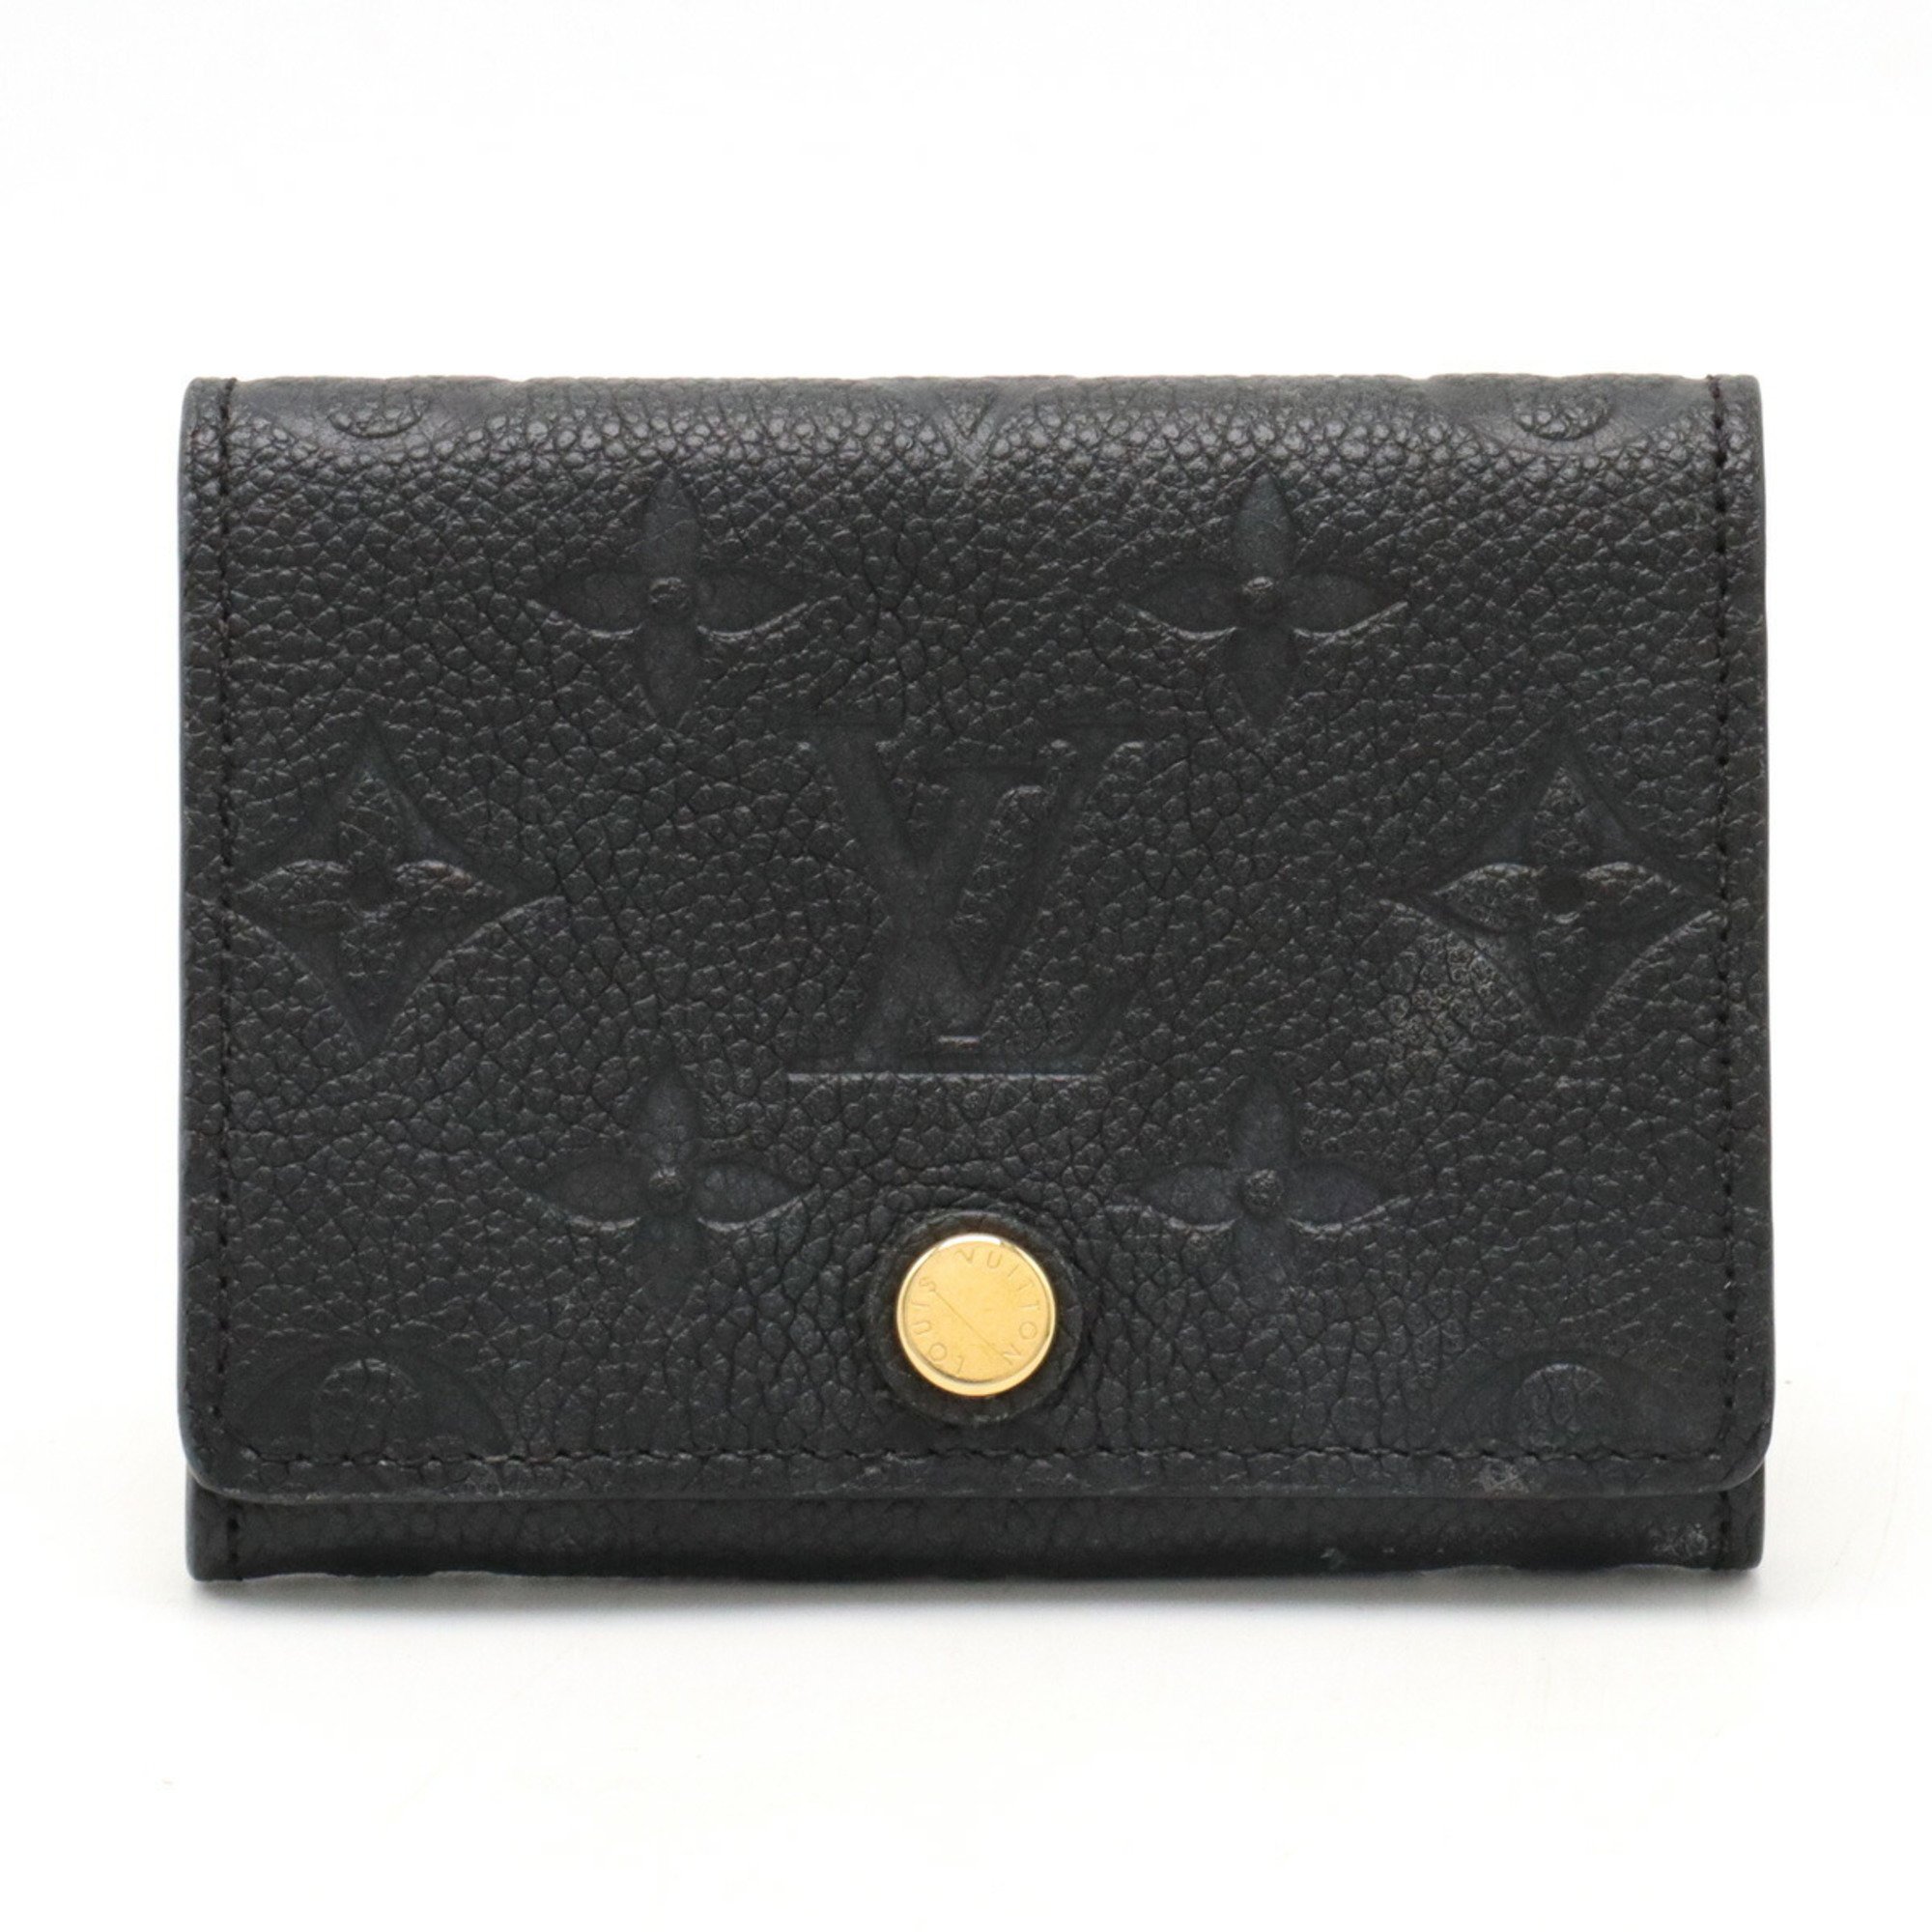 LOUIS VUITTON Monogram Emprene Avelop Carte de Visit Card Case Business Holder Noir Black M58456